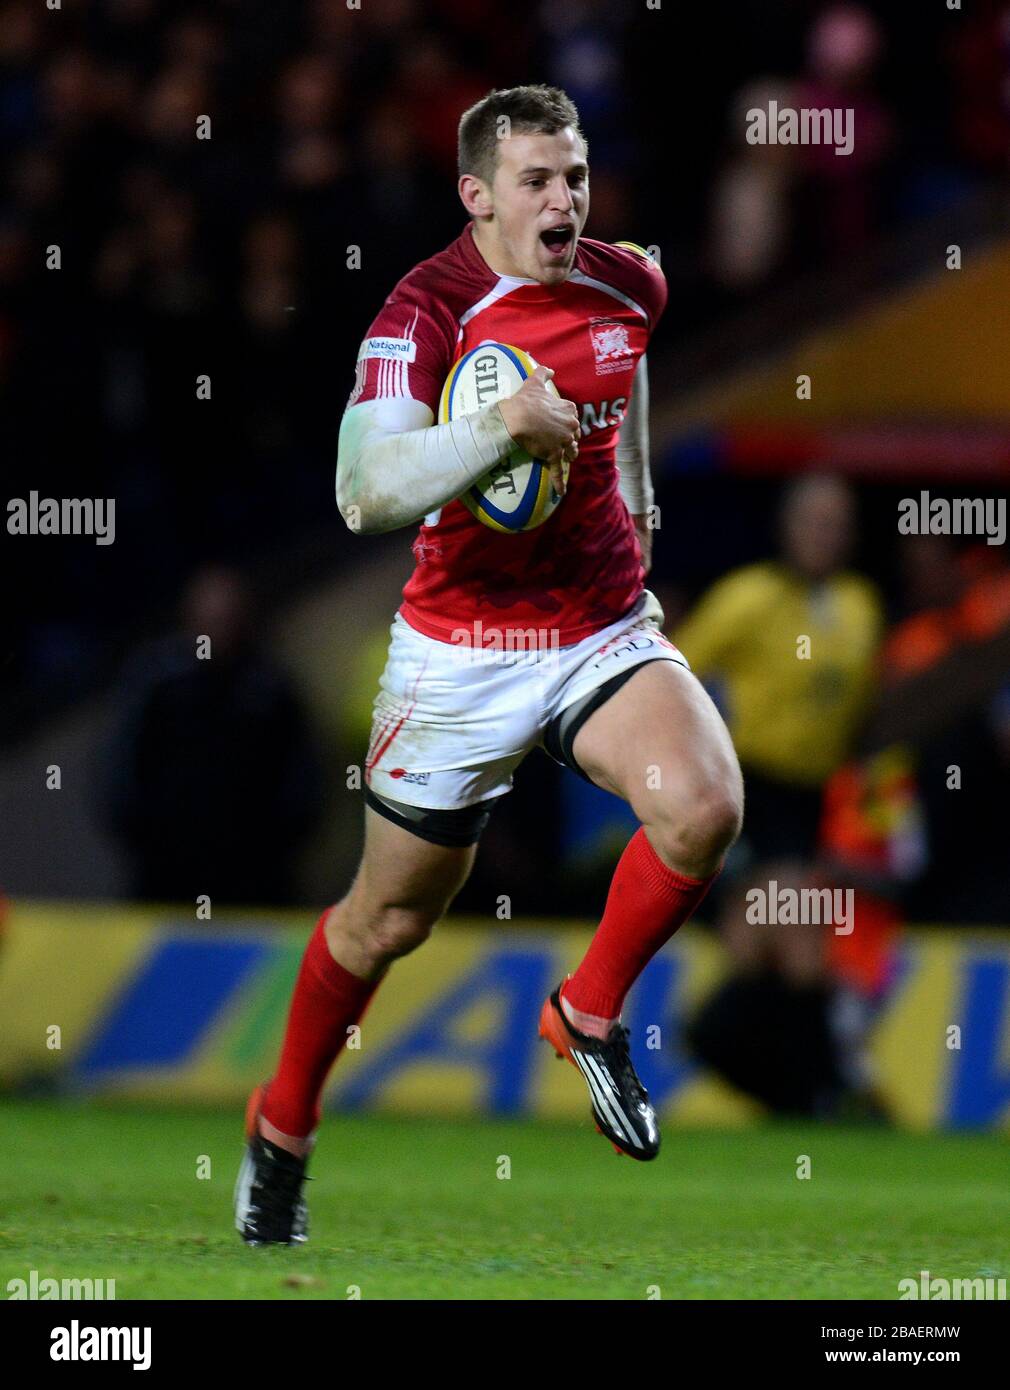 London Welsh's Nick Scott runs in to score the winning try Stock Photo